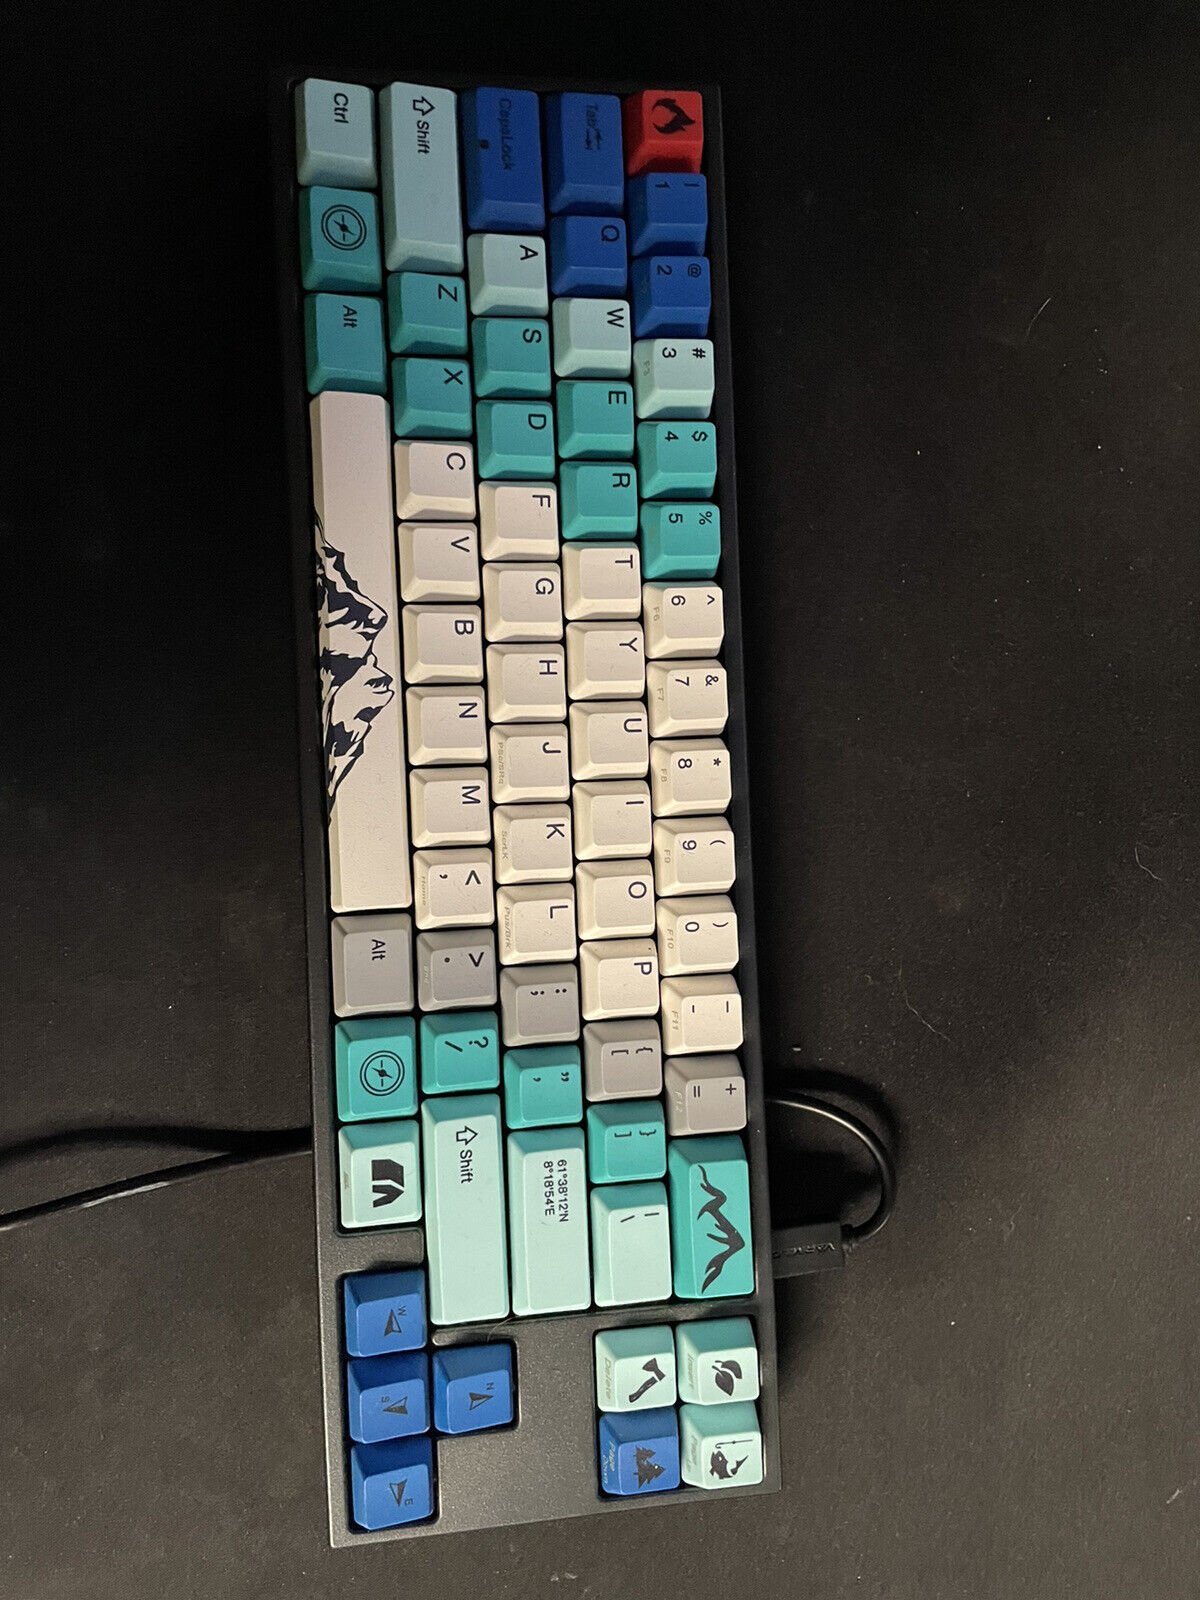 Ducky varmilo summit keyboard